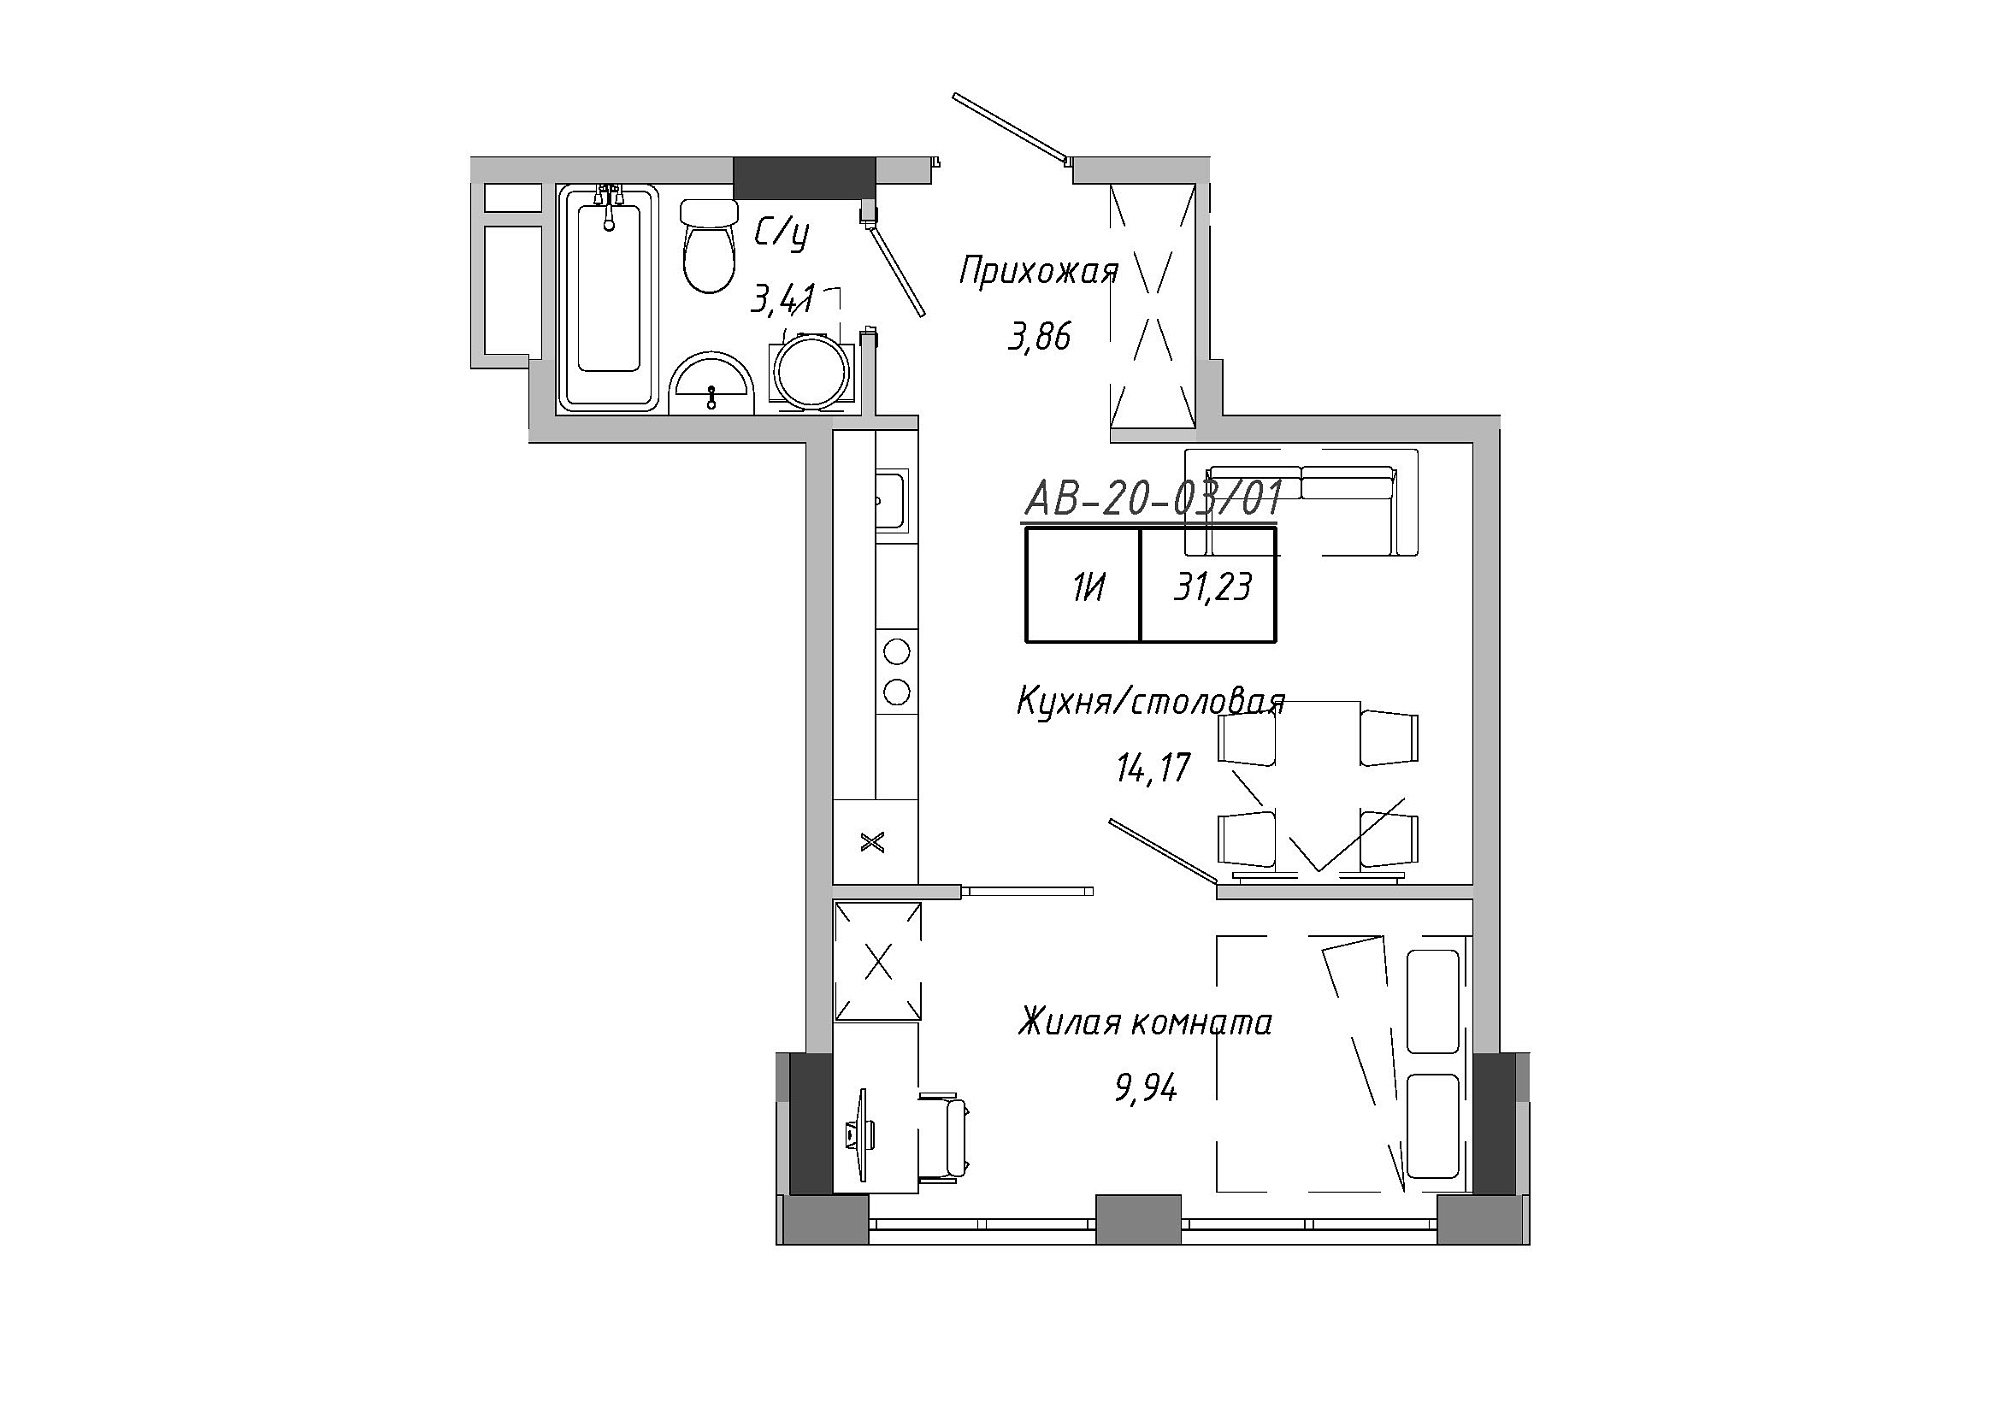 Планировка 1-к квартира площей 31.23м2, AB-20-03/00001.